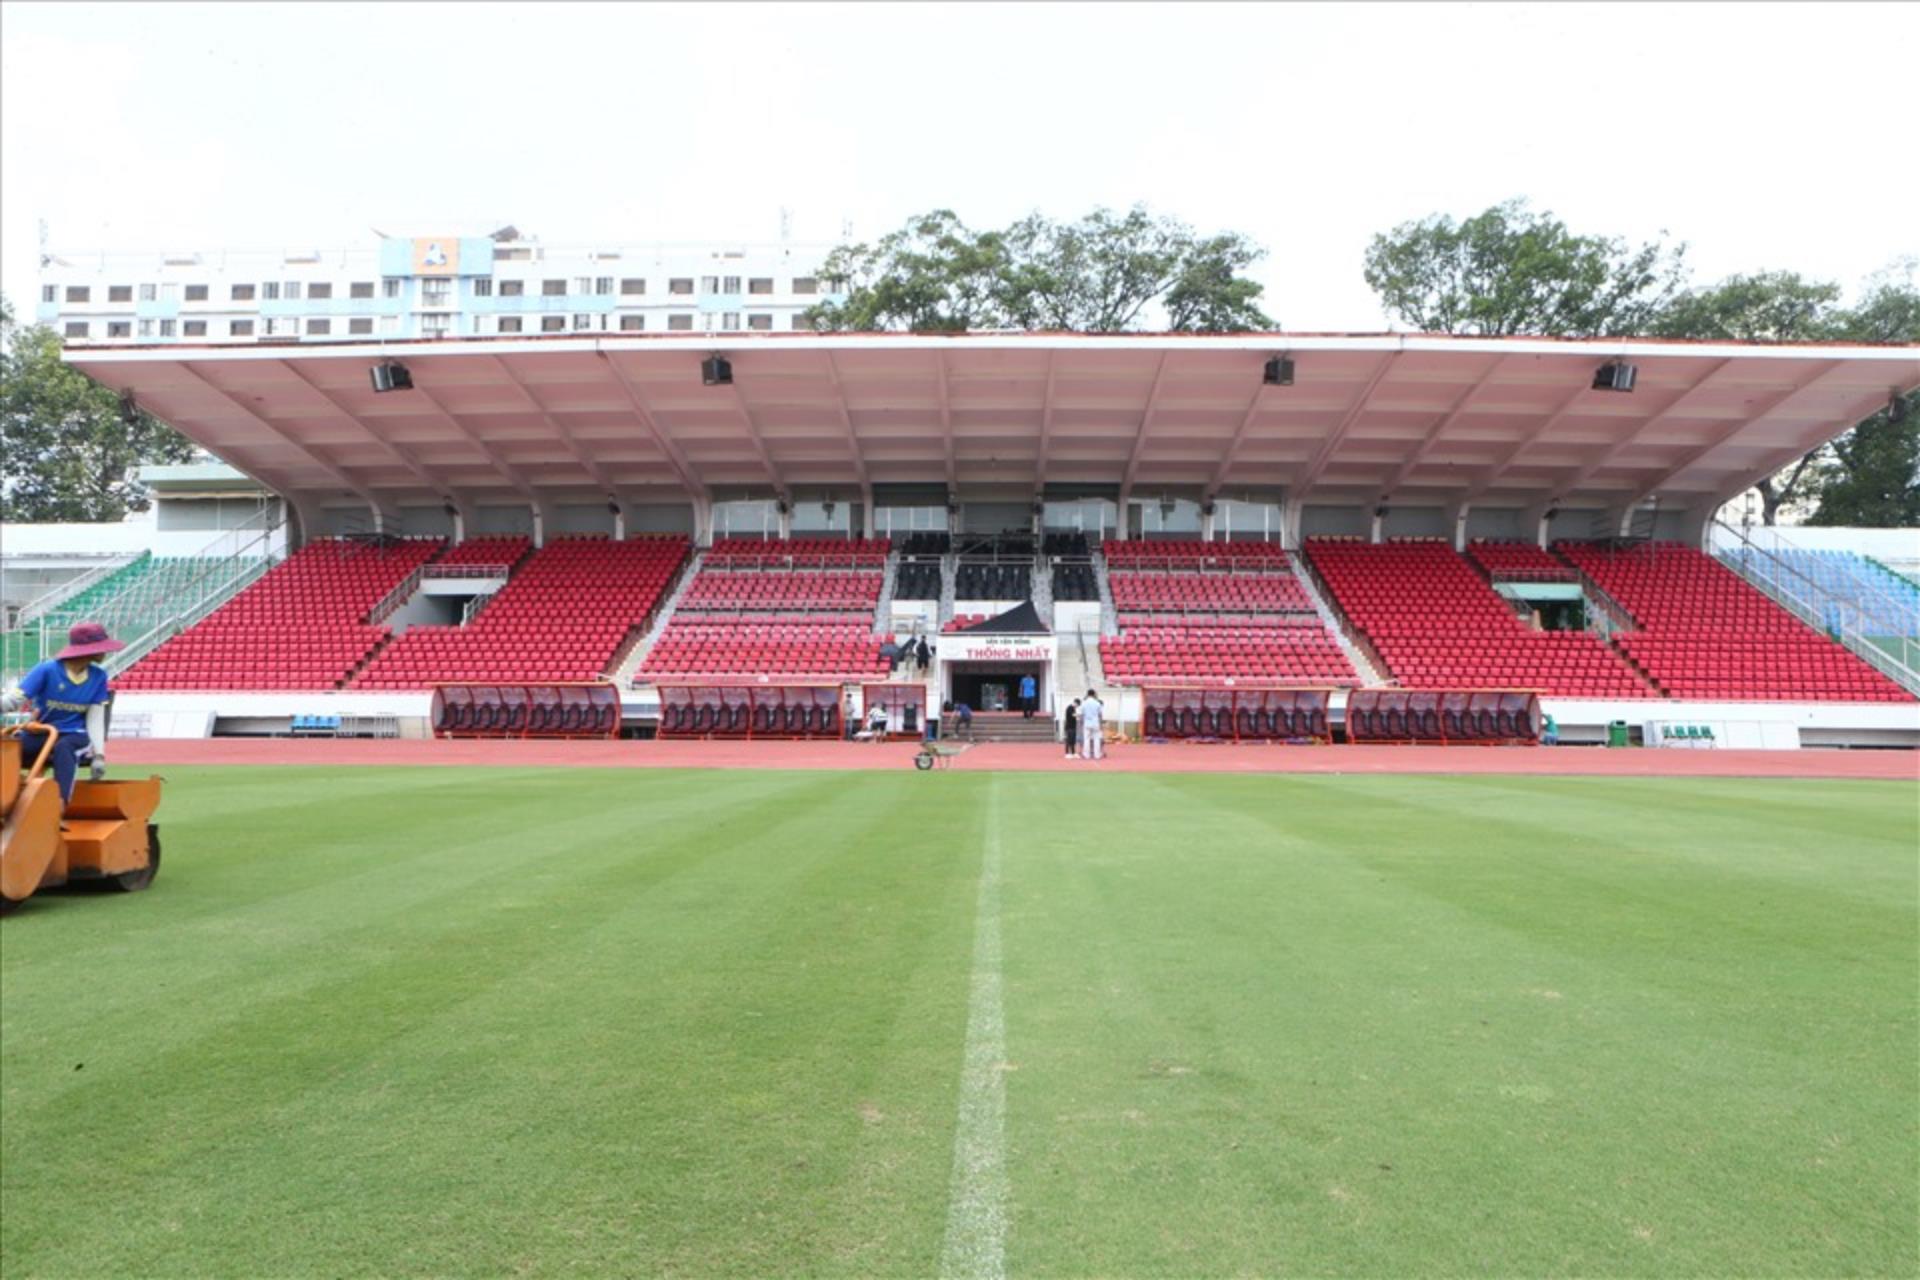 Sân vận động Thống Nhất trước đây từng là sân vận động lớn nhất, đẹp nhất và hiện đại nhất của Việt Nam